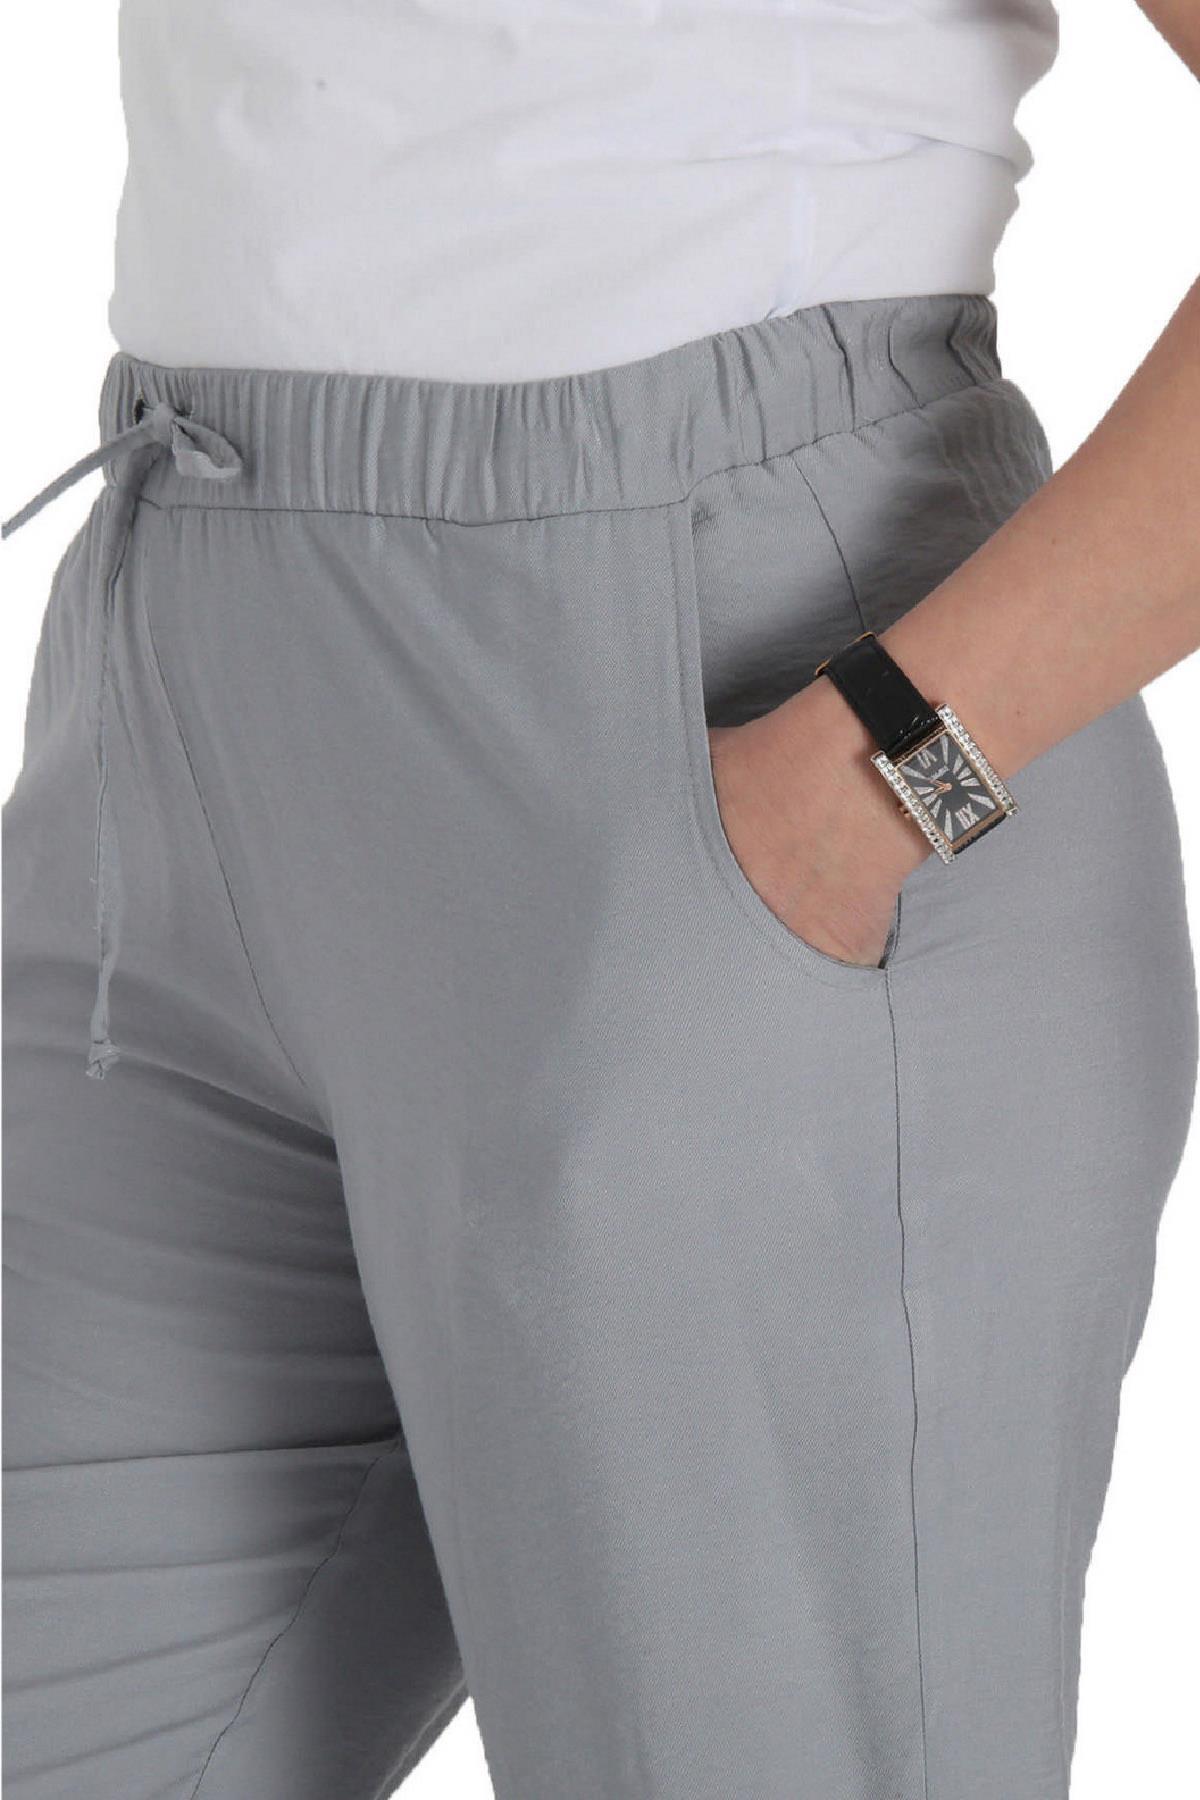 fierte-kadin-buyuk-beden-pantolon-lm62041-keten-normal-elastik-bel-dar-paca-spor-cep-mavi-siyah-yesi-19455.jpg